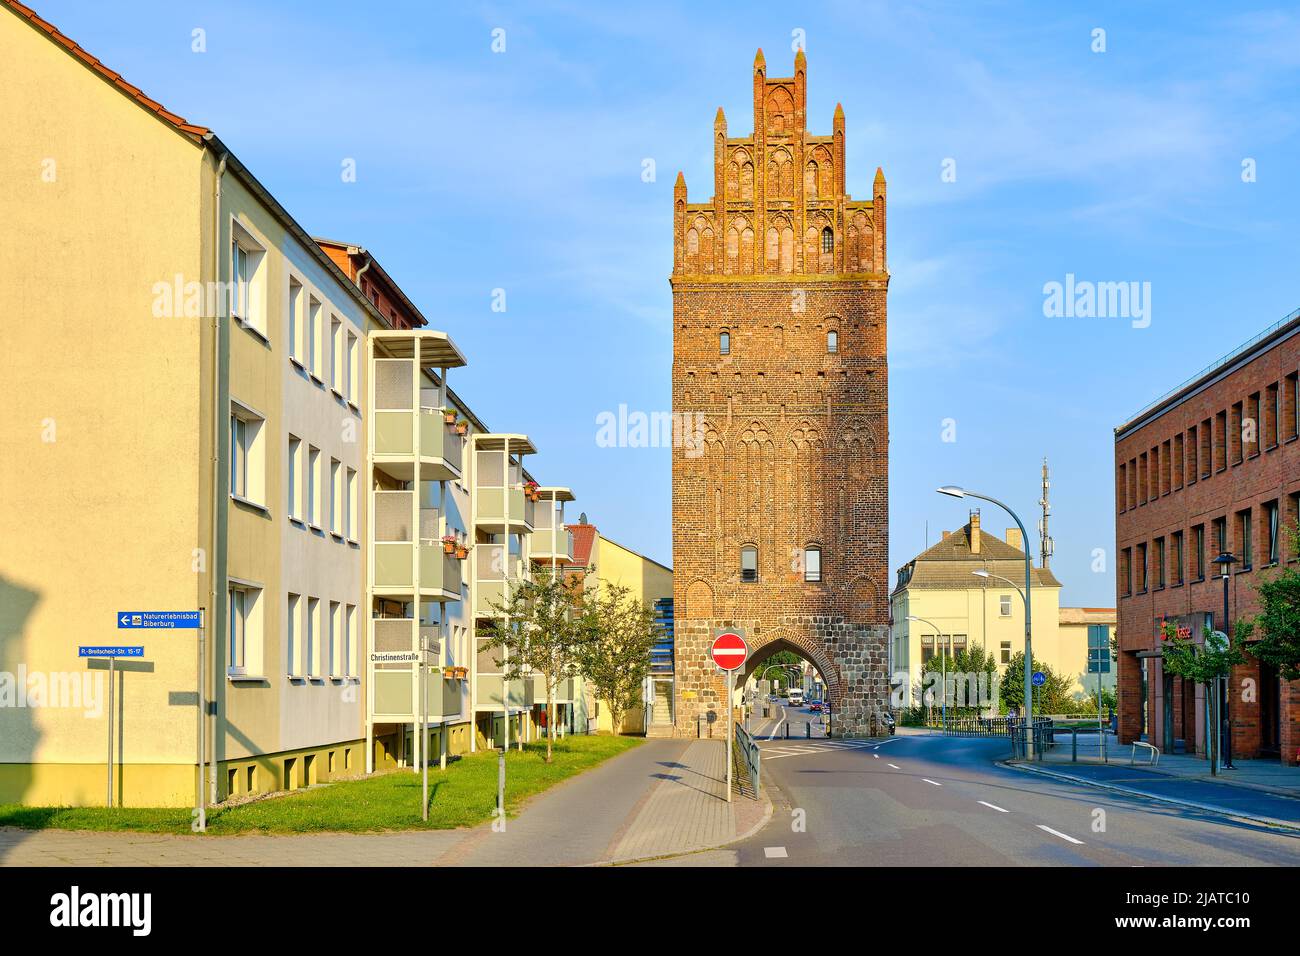 Città anseatica di Demmin, Meclemburgo-Pomerania occidentale, Germania, 7 agosto 2020: La porta Luisa (Luisentor), parte della fortificazione medievale della città. Foto Stock